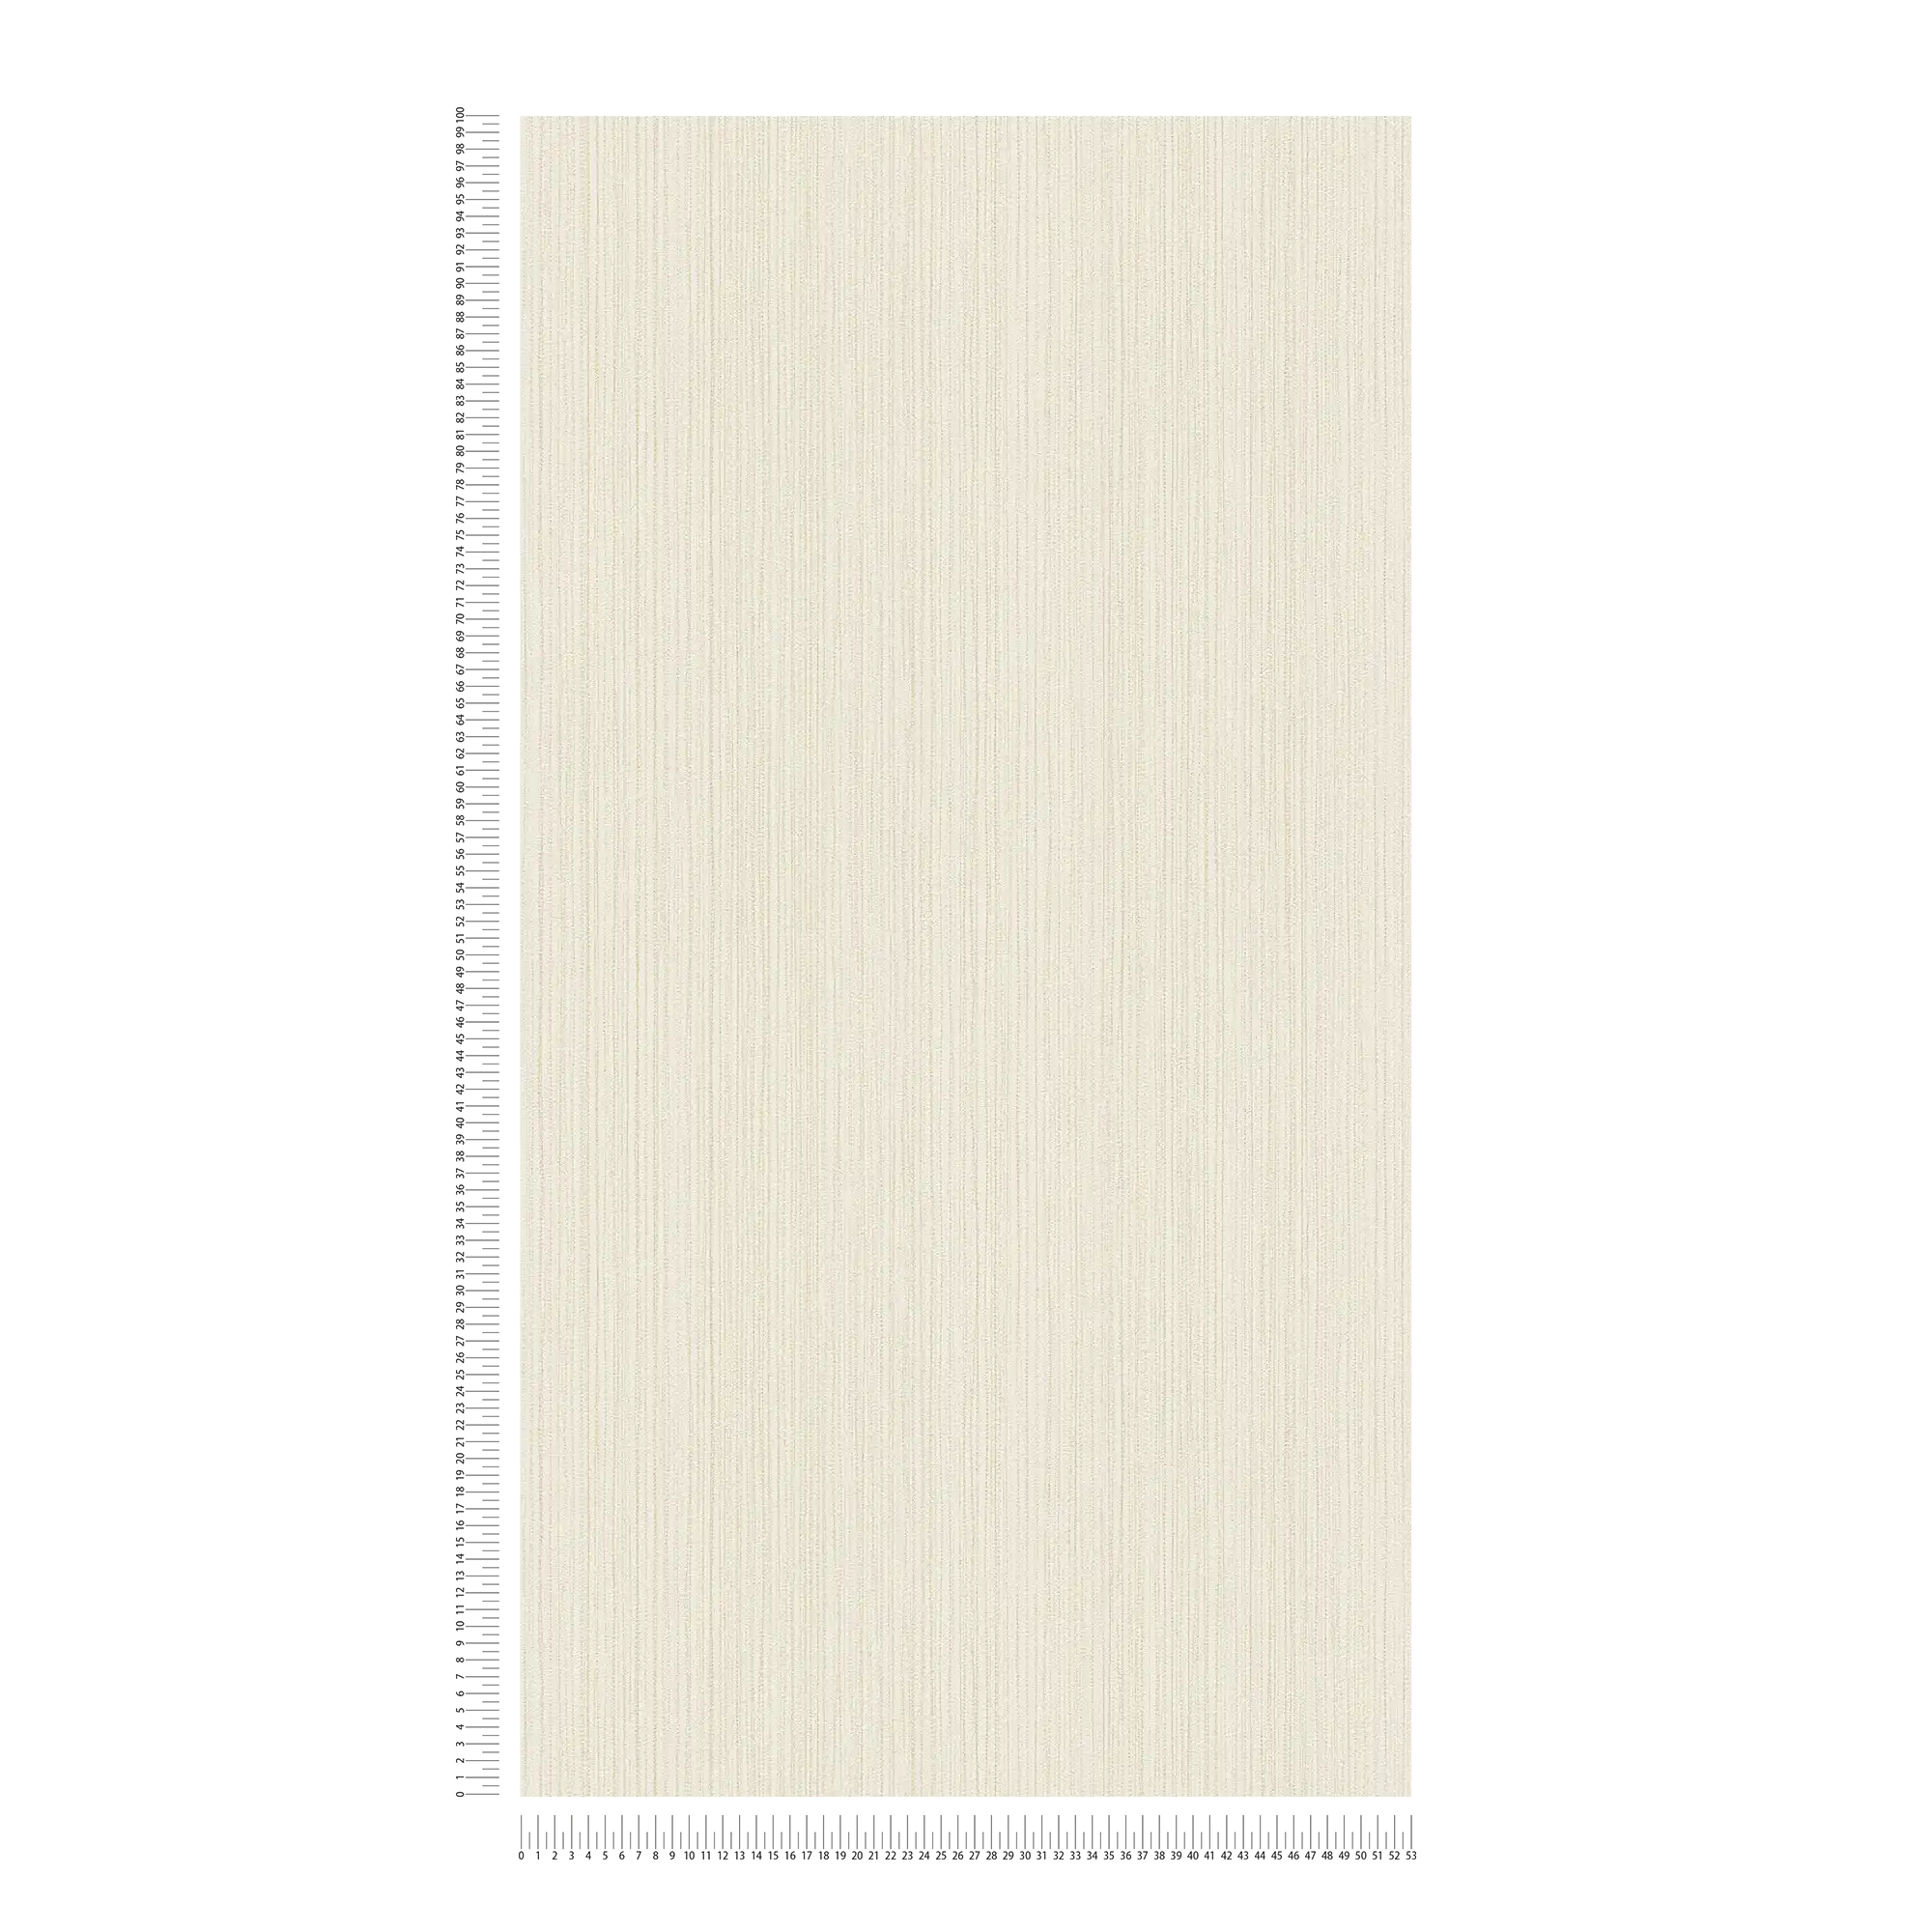             Carta da parati a tinta unita avorio con struttura a linee - crema
        